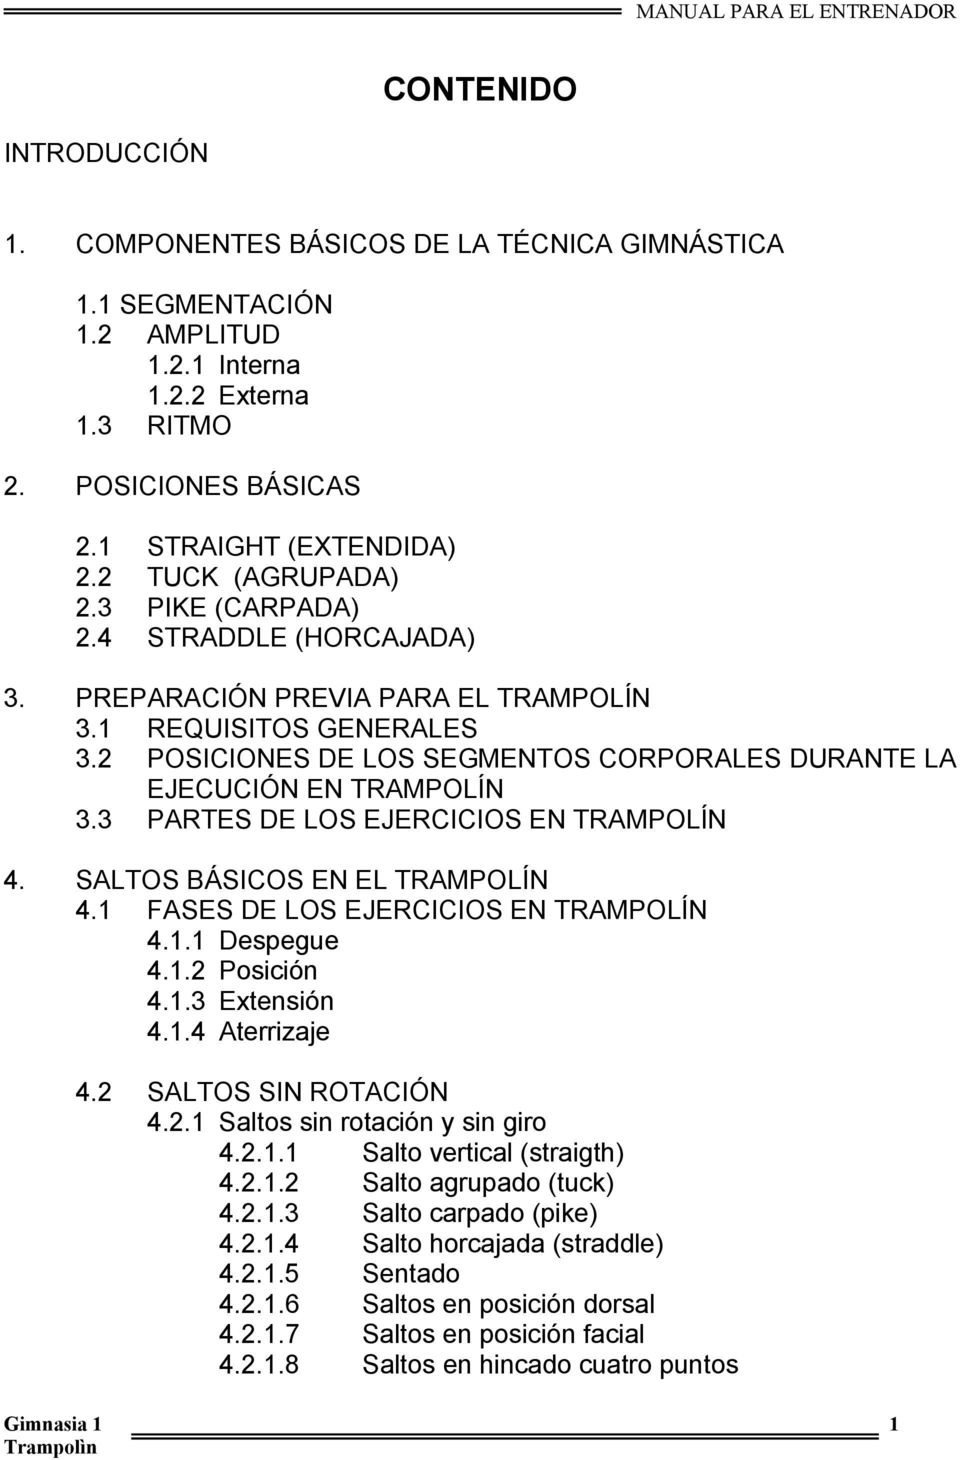 2 POSICIONES DE LOS SEGMENTOS CORPORALES DURANTE LA EJECUCIÓN EN TRAMPOLÍN 3.3 PARTES DE LOS EJERCICIOS EN TRAMPOLÍN 4. SALTOS BÁSICOS EN EL TRAMPOLÍN 4.1 FASES DE LOS EJERCICIOS EN TRAMPOLÍN 4.1.1 Despegue 4.